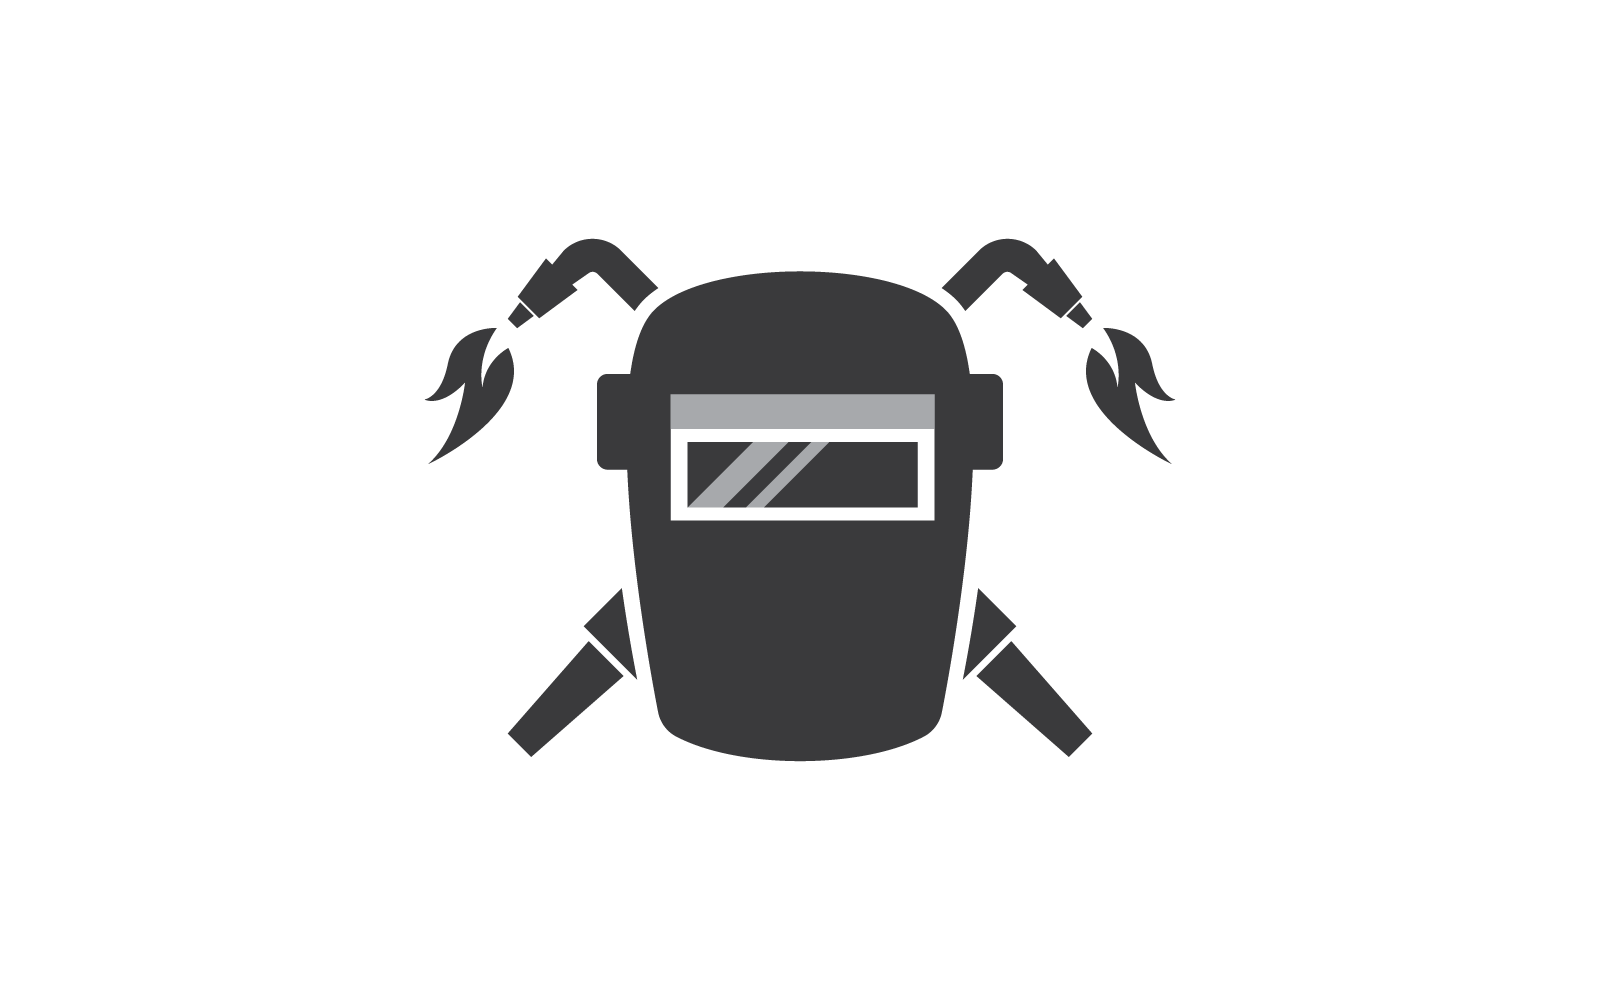 Welder mask logo illustration vector flat design template